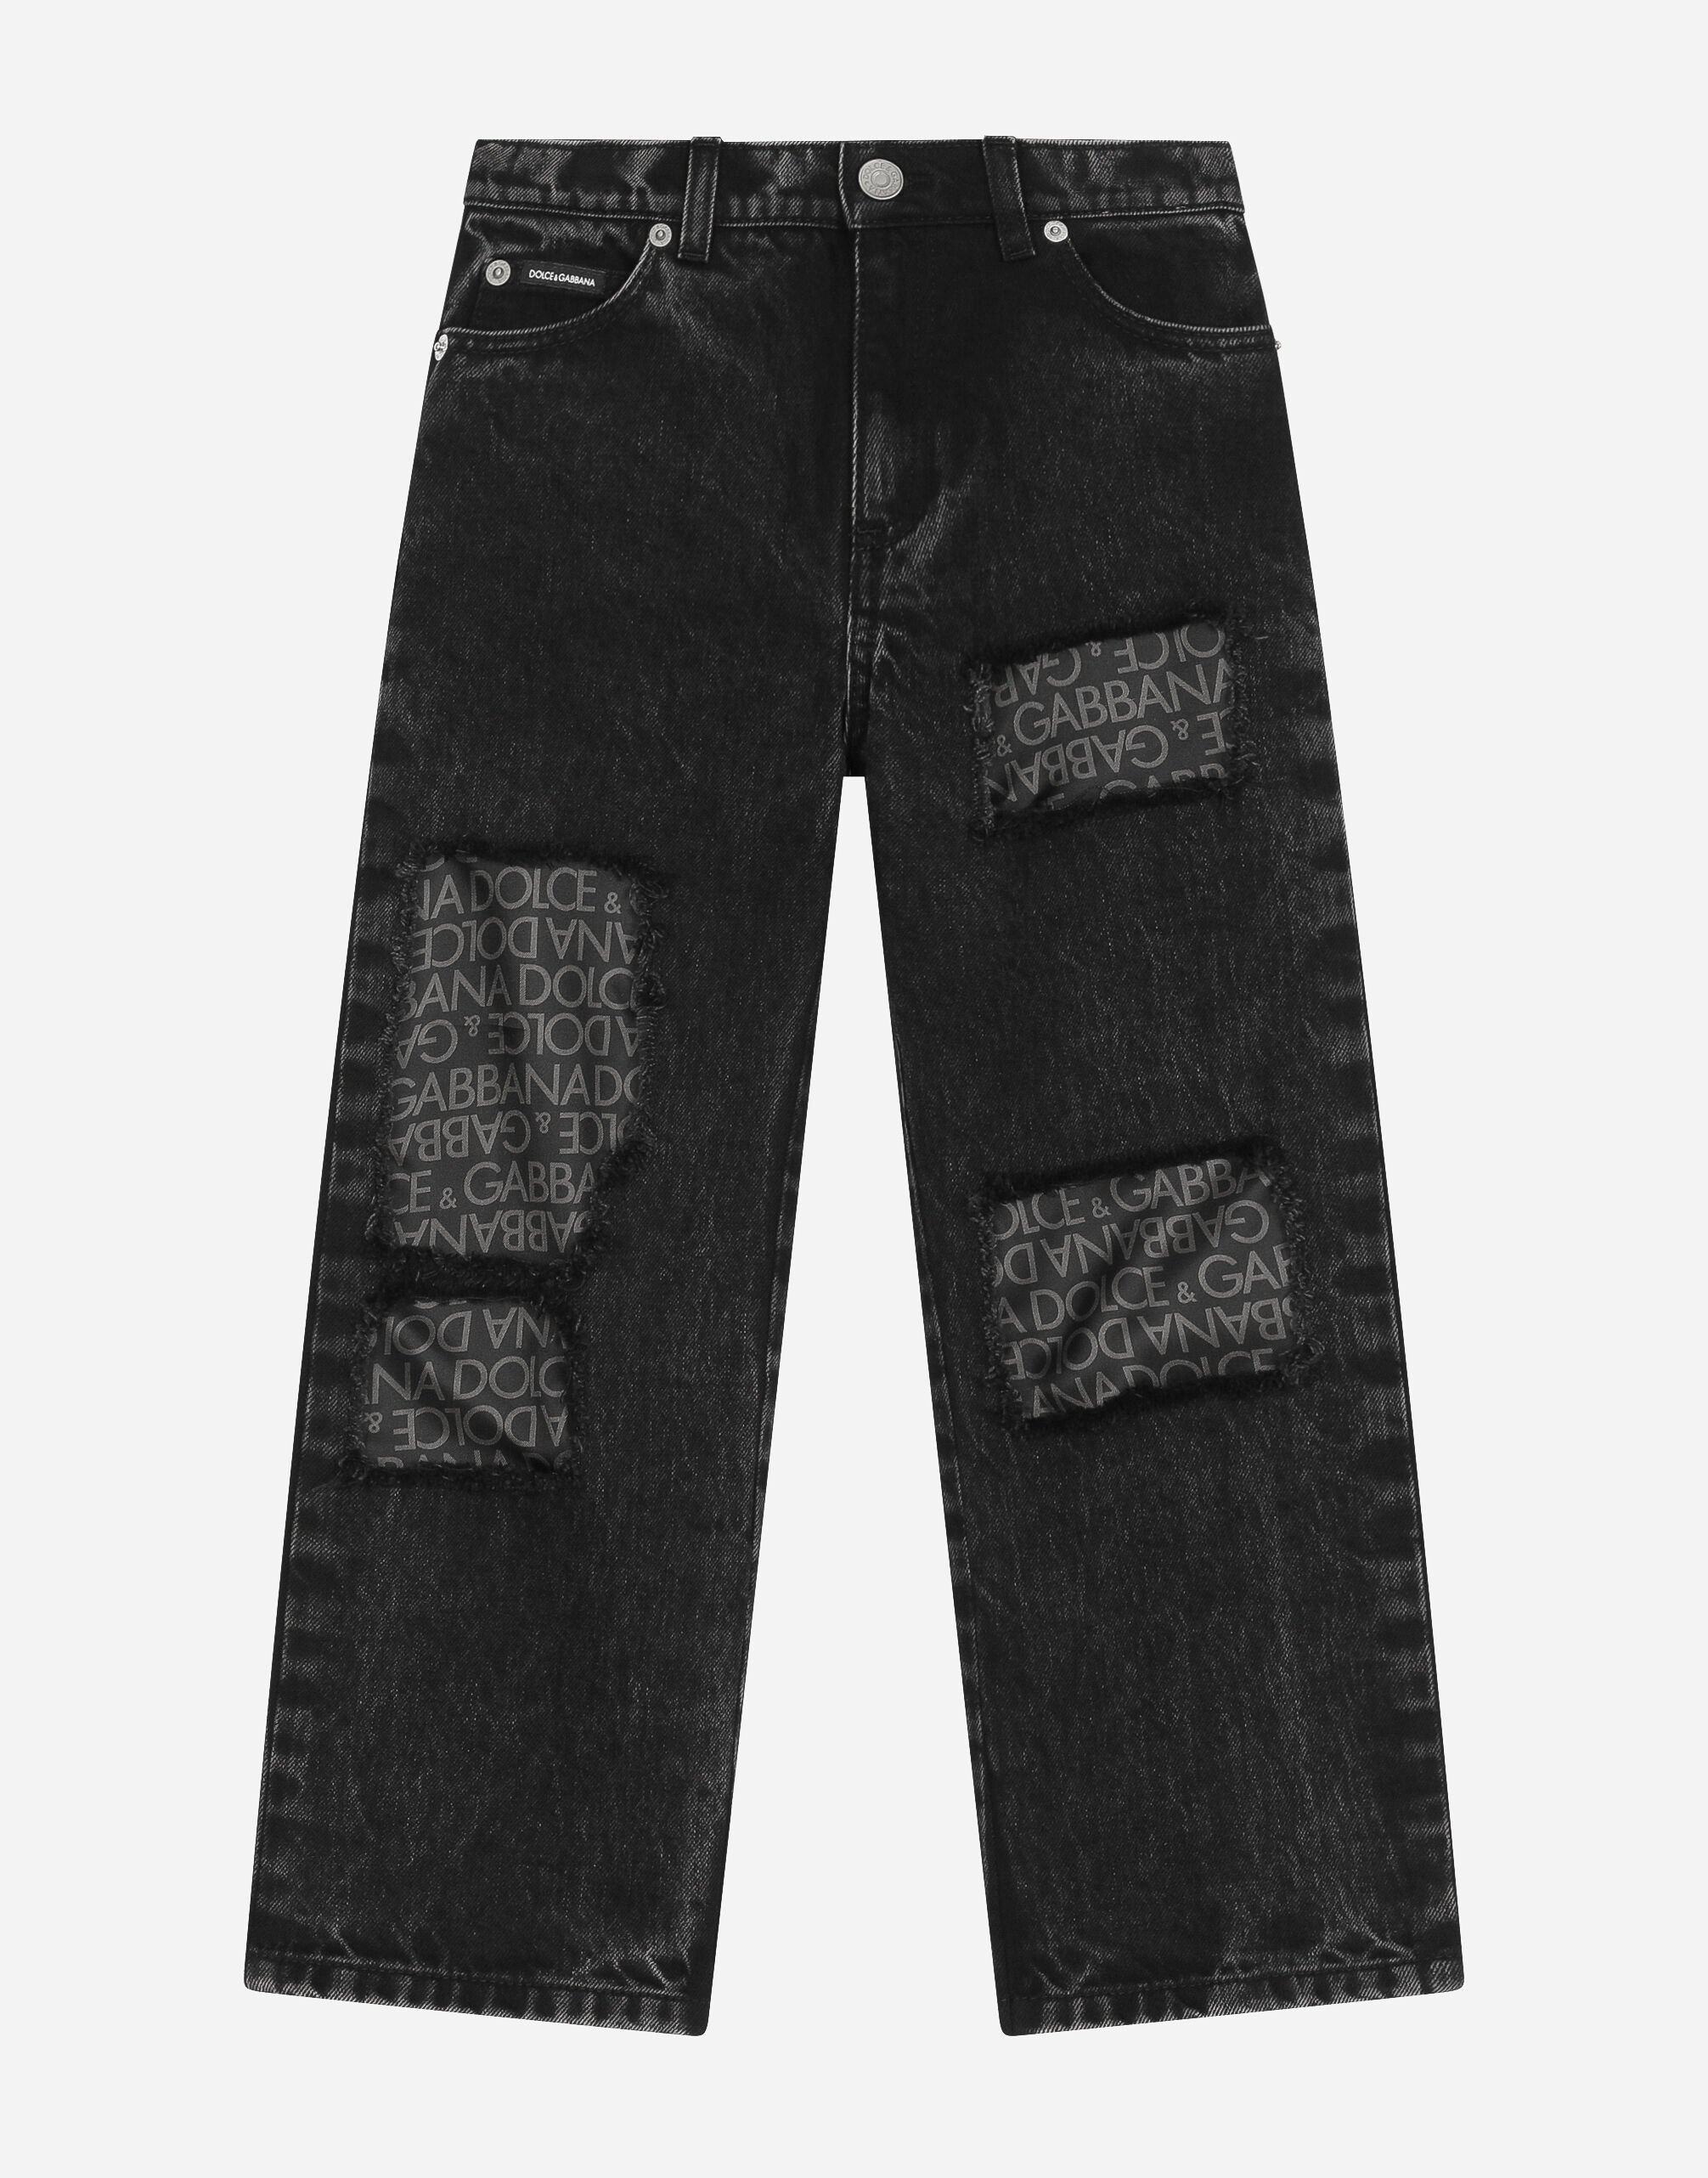 Dolce & Gabbana 5-pocket jeans with silk twill interior Multicolor DA5189AB028